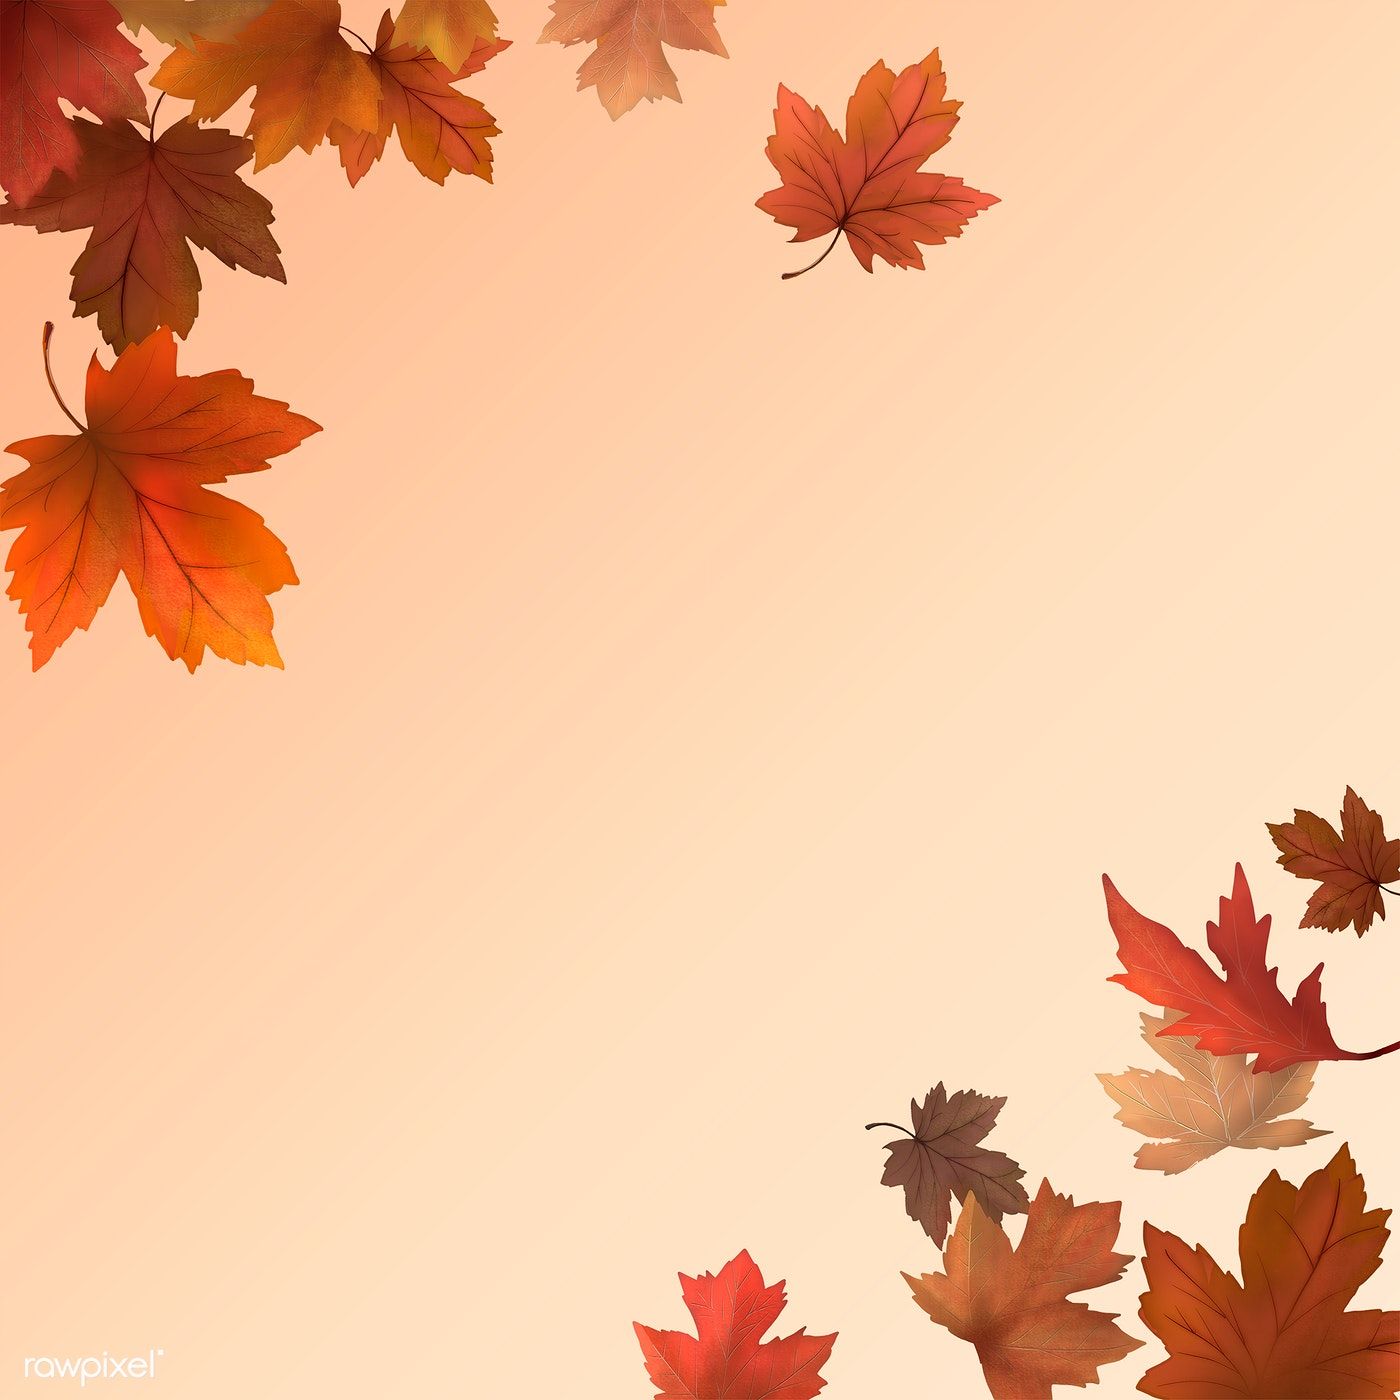 Red Maple Leaf Framed Background Illustration Image By